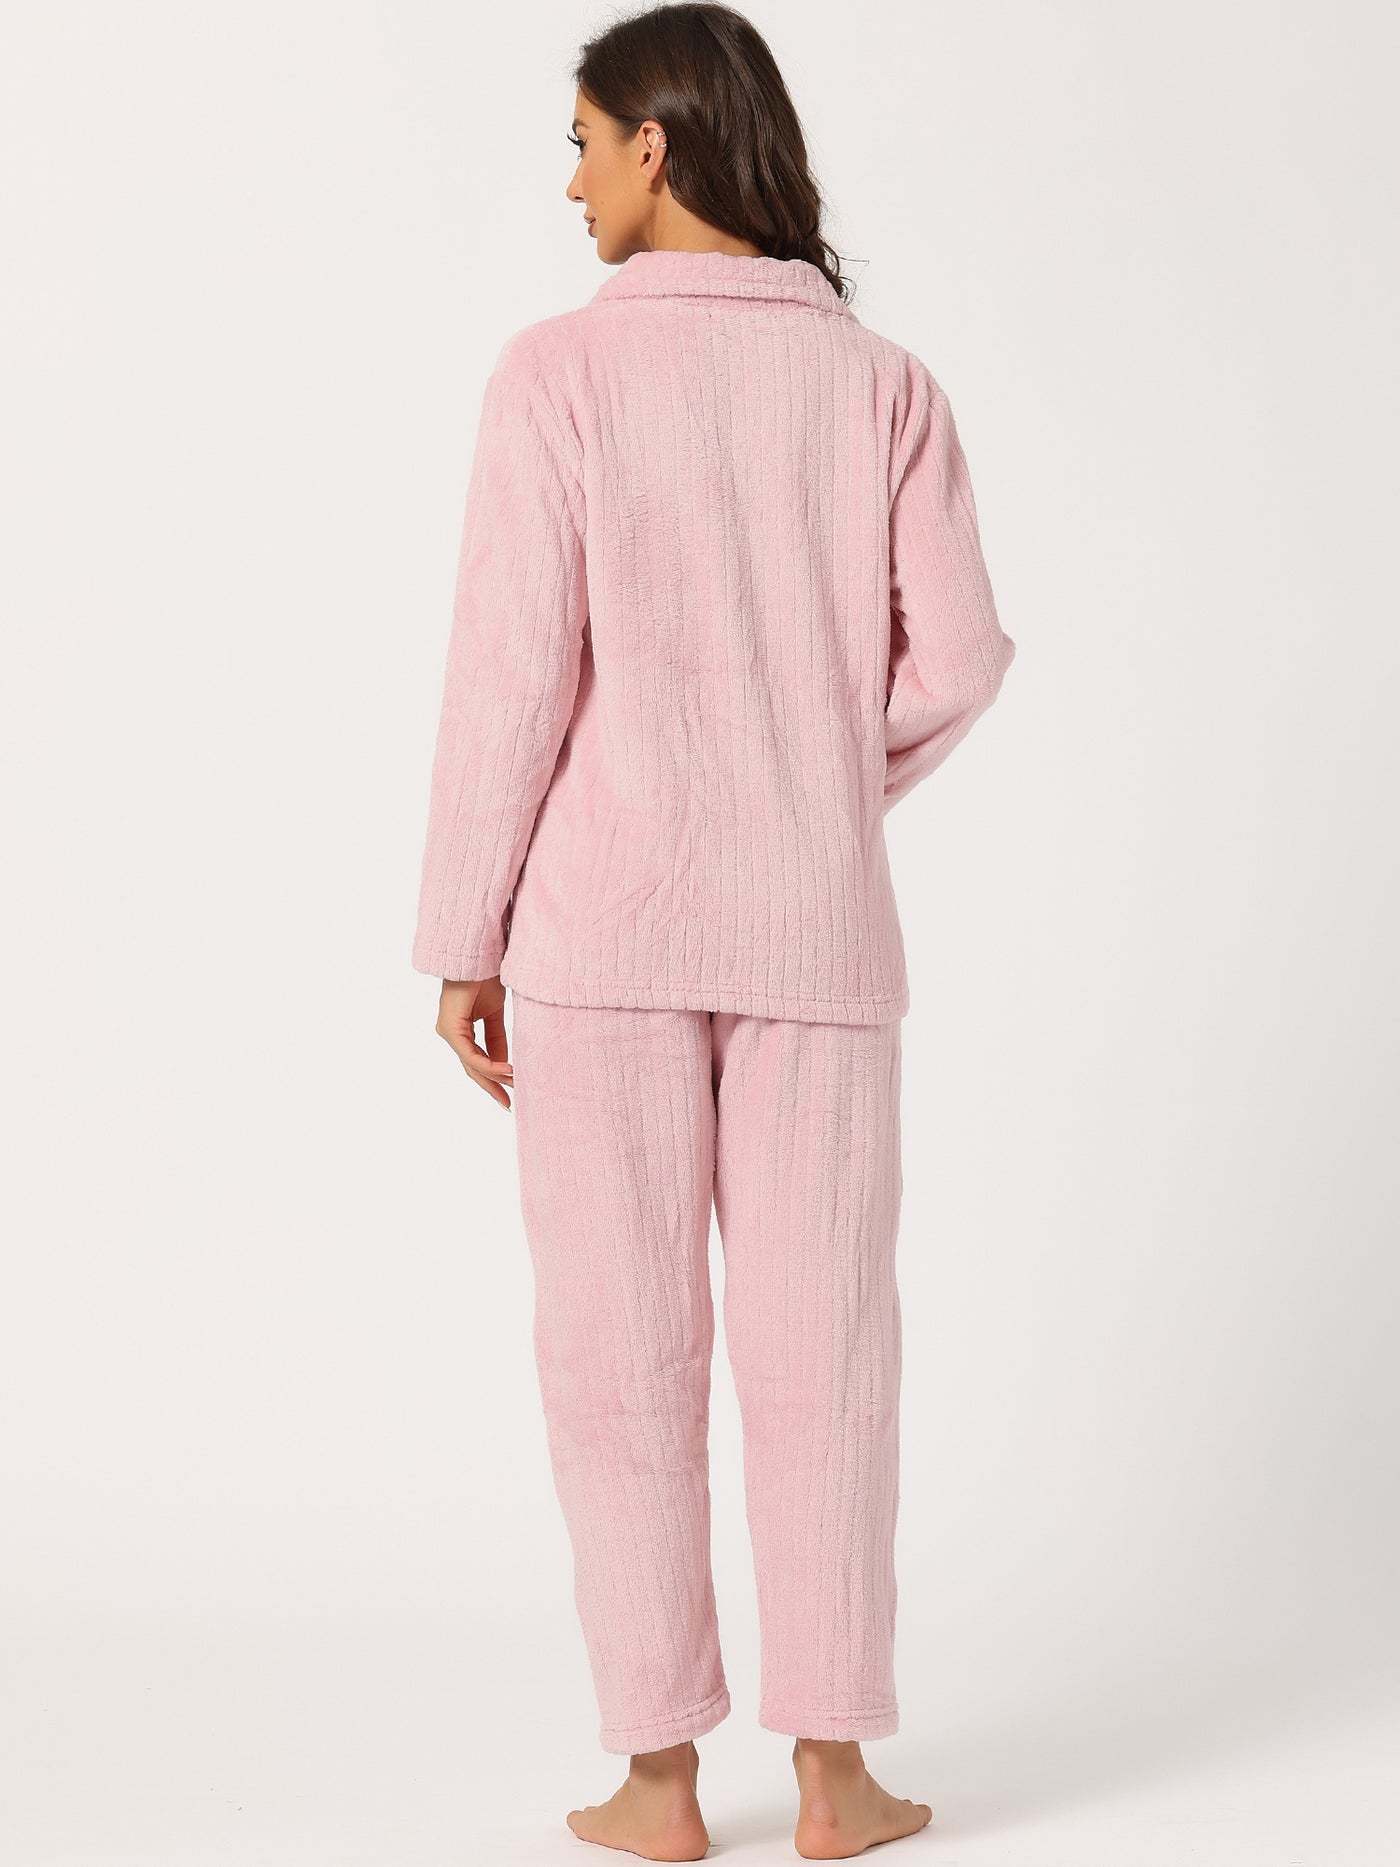 Allegra K Sleepwear Flannel Button Down Lounge Winter Long Sleeve Pajama Sets